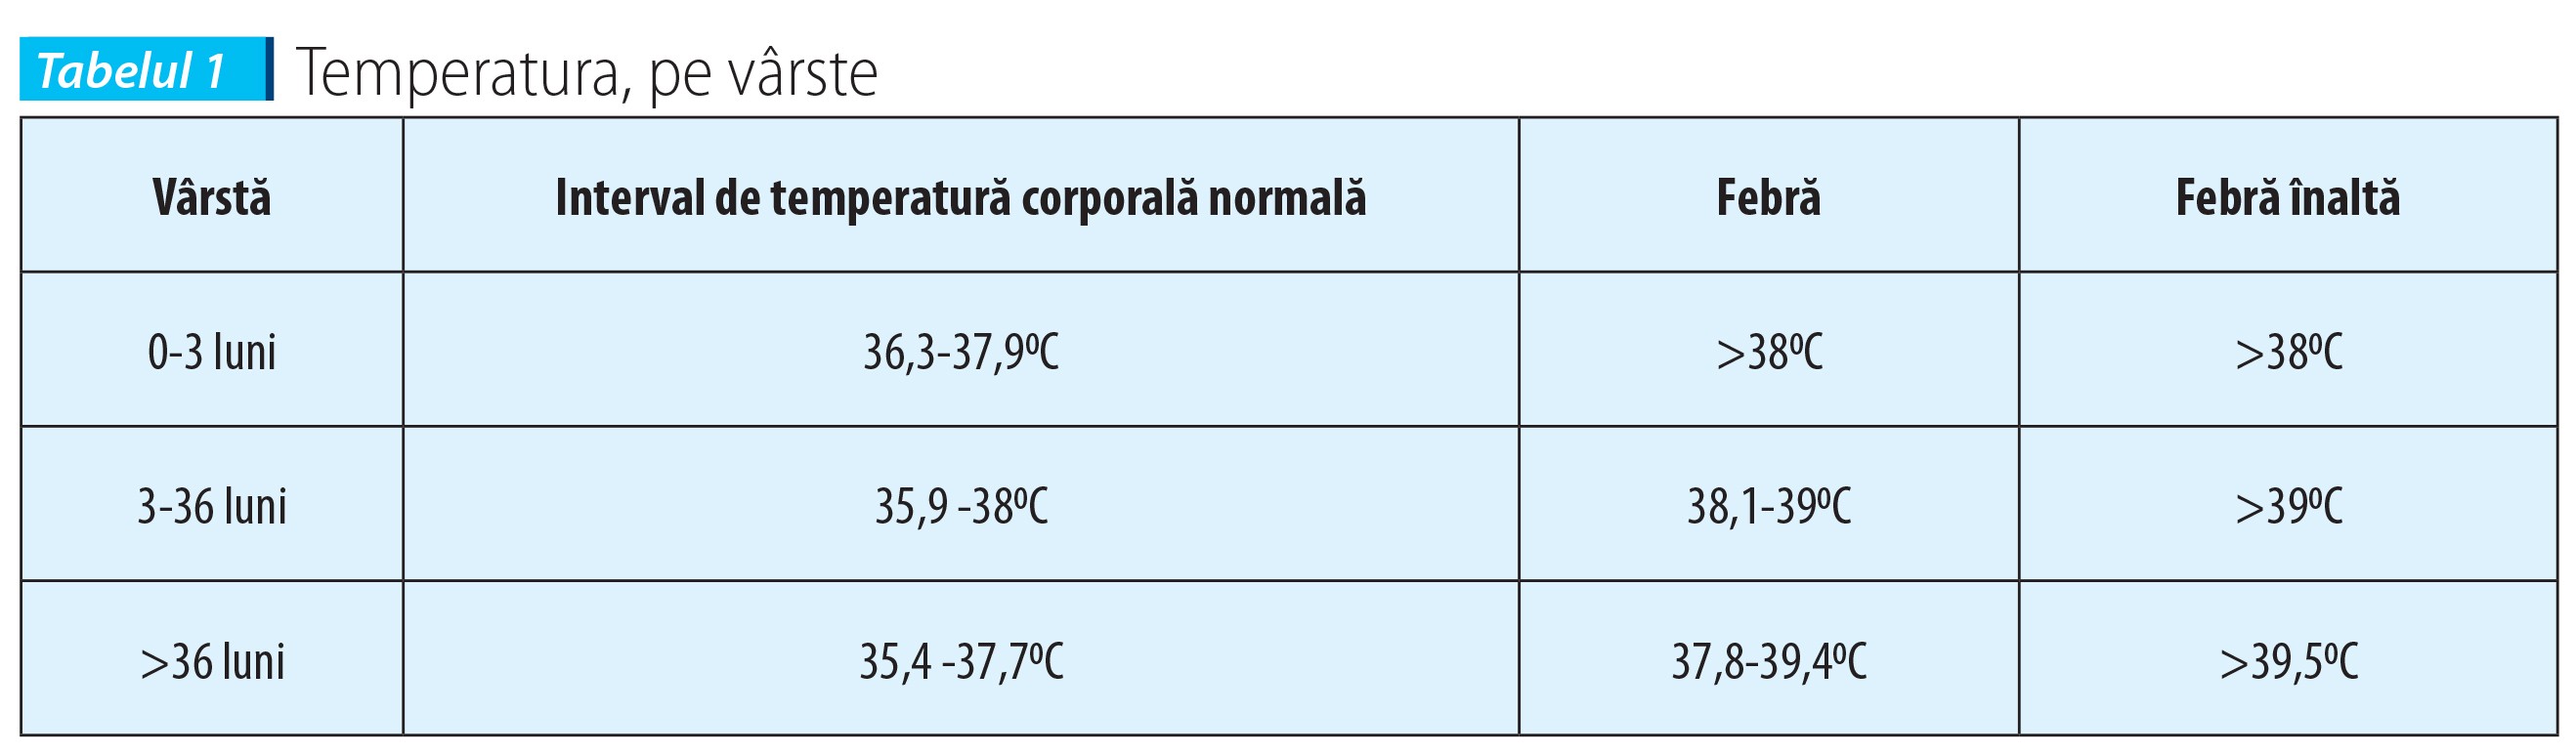 Tabelul 1 Temperatura, pe vârste